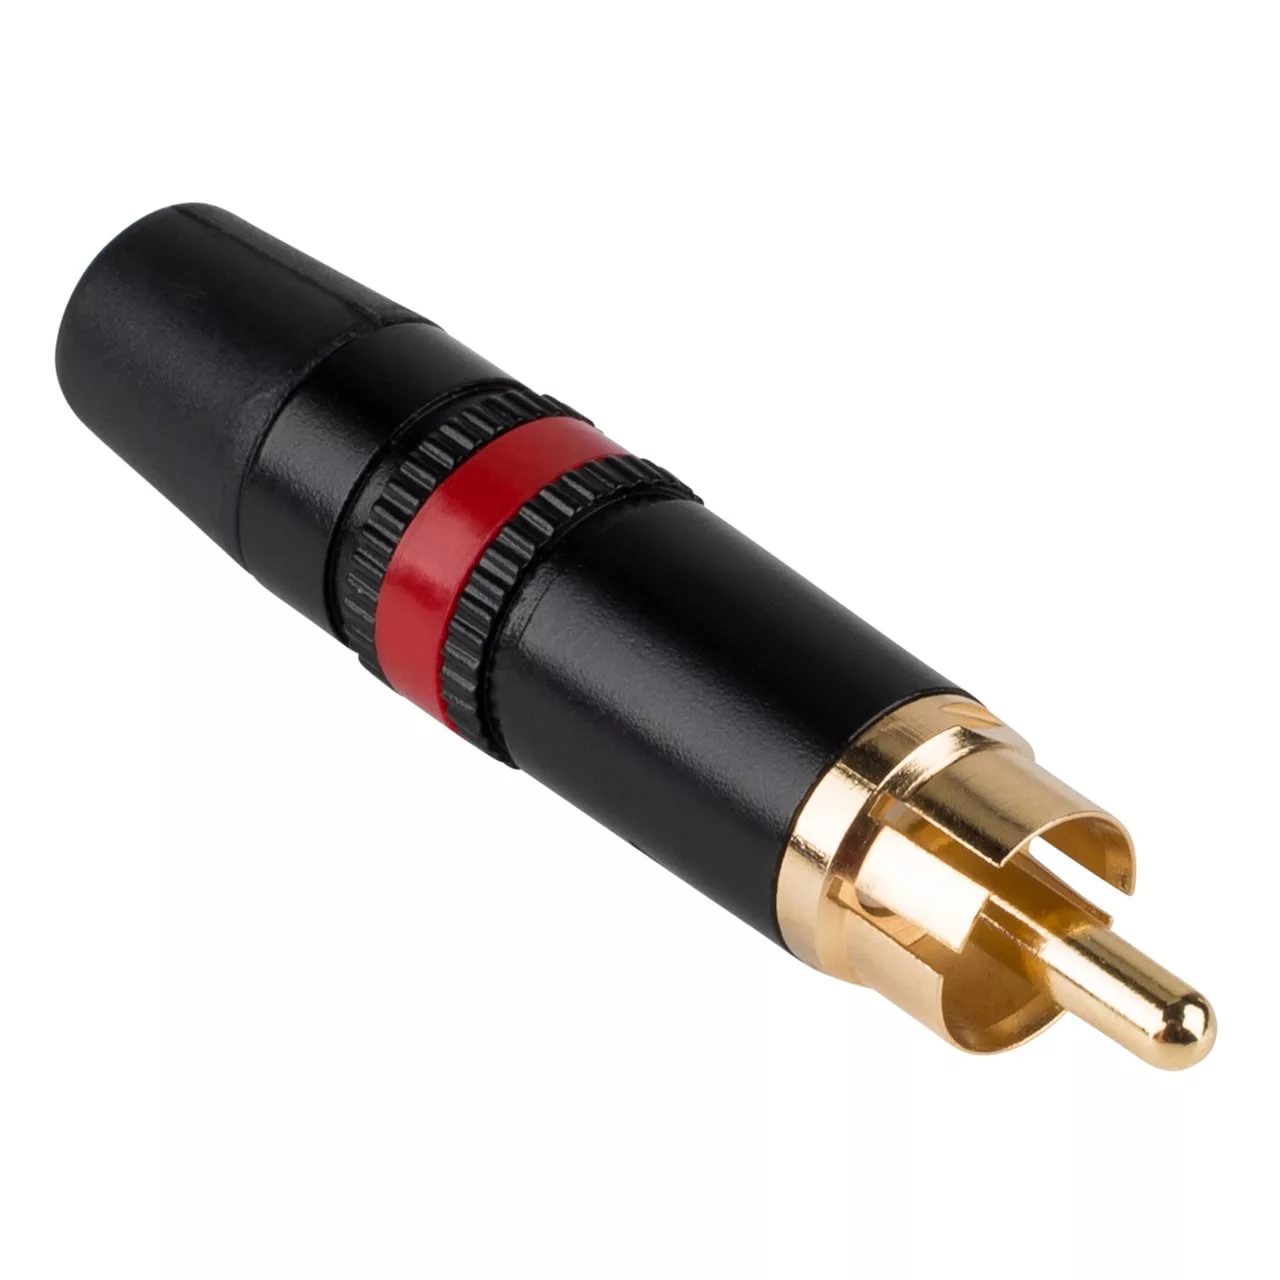 Neutrik NYS373-2 кабельный разъем RCA корпус черный хром, золоченые контакты, красная полоса